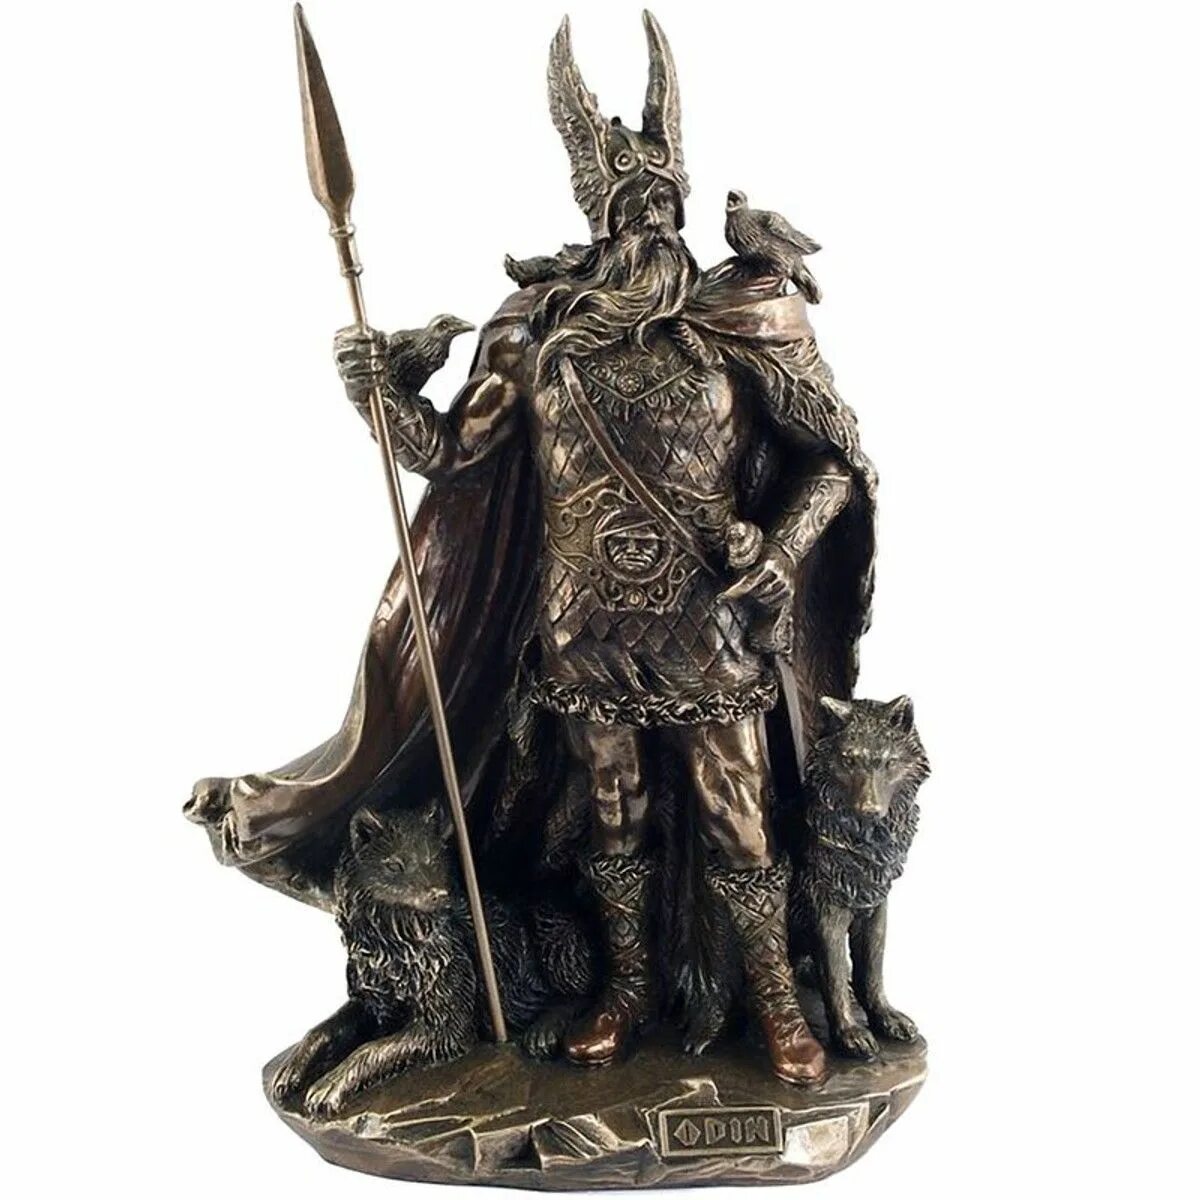 Один это бог чего. Статуя Бога Одина Викинги. Скандинавская мифология Odin. Гунгнир Скандинавская мифология. Бог один Скандинавия.